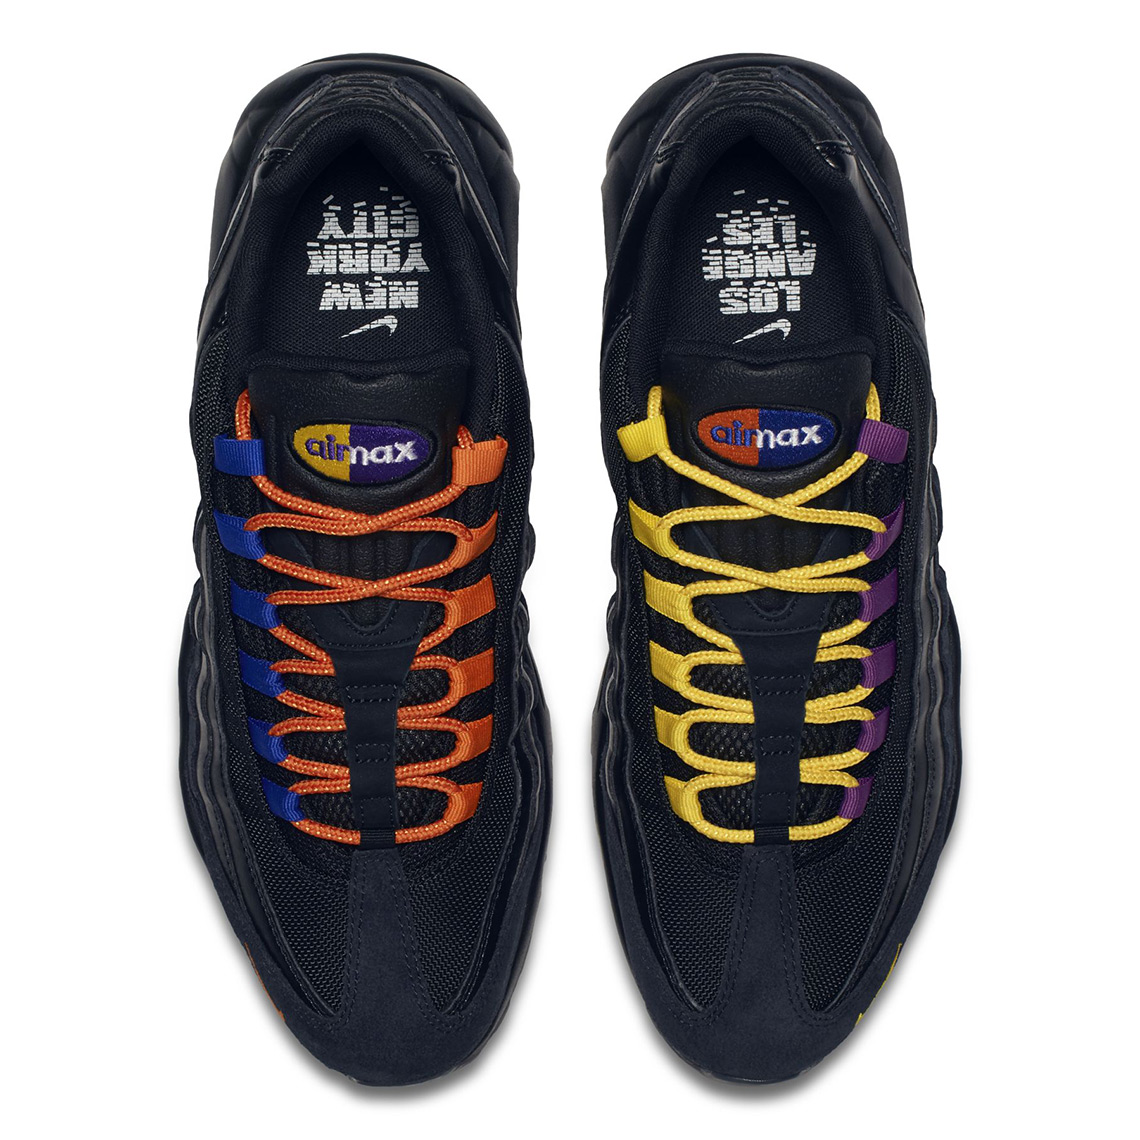 Nike Air Max 95 vs NYC AT8505-001 Photos SneakerNews.com